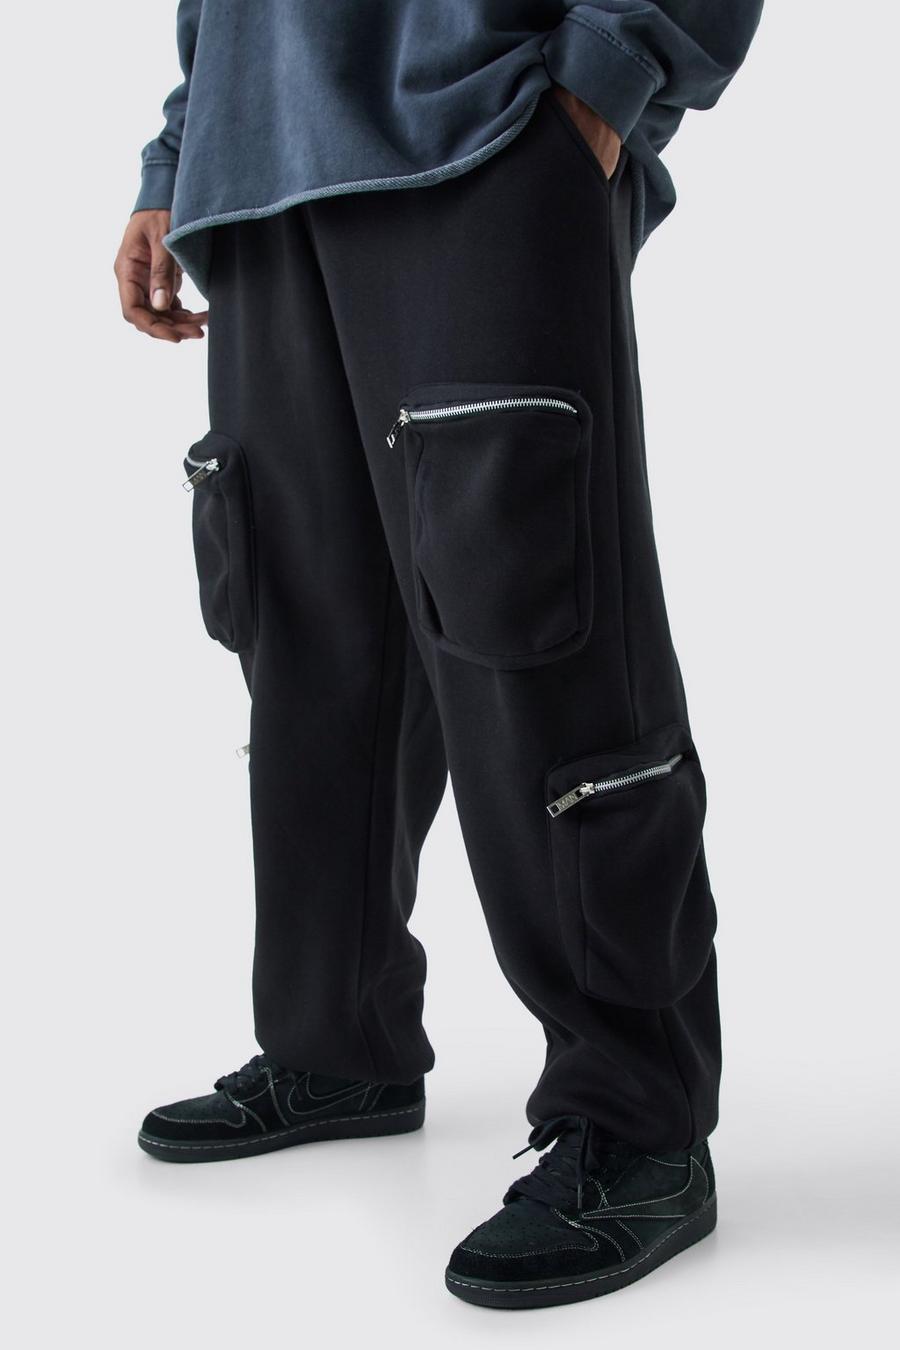 Pantalón deportivo Plus utilitario cargo, Black